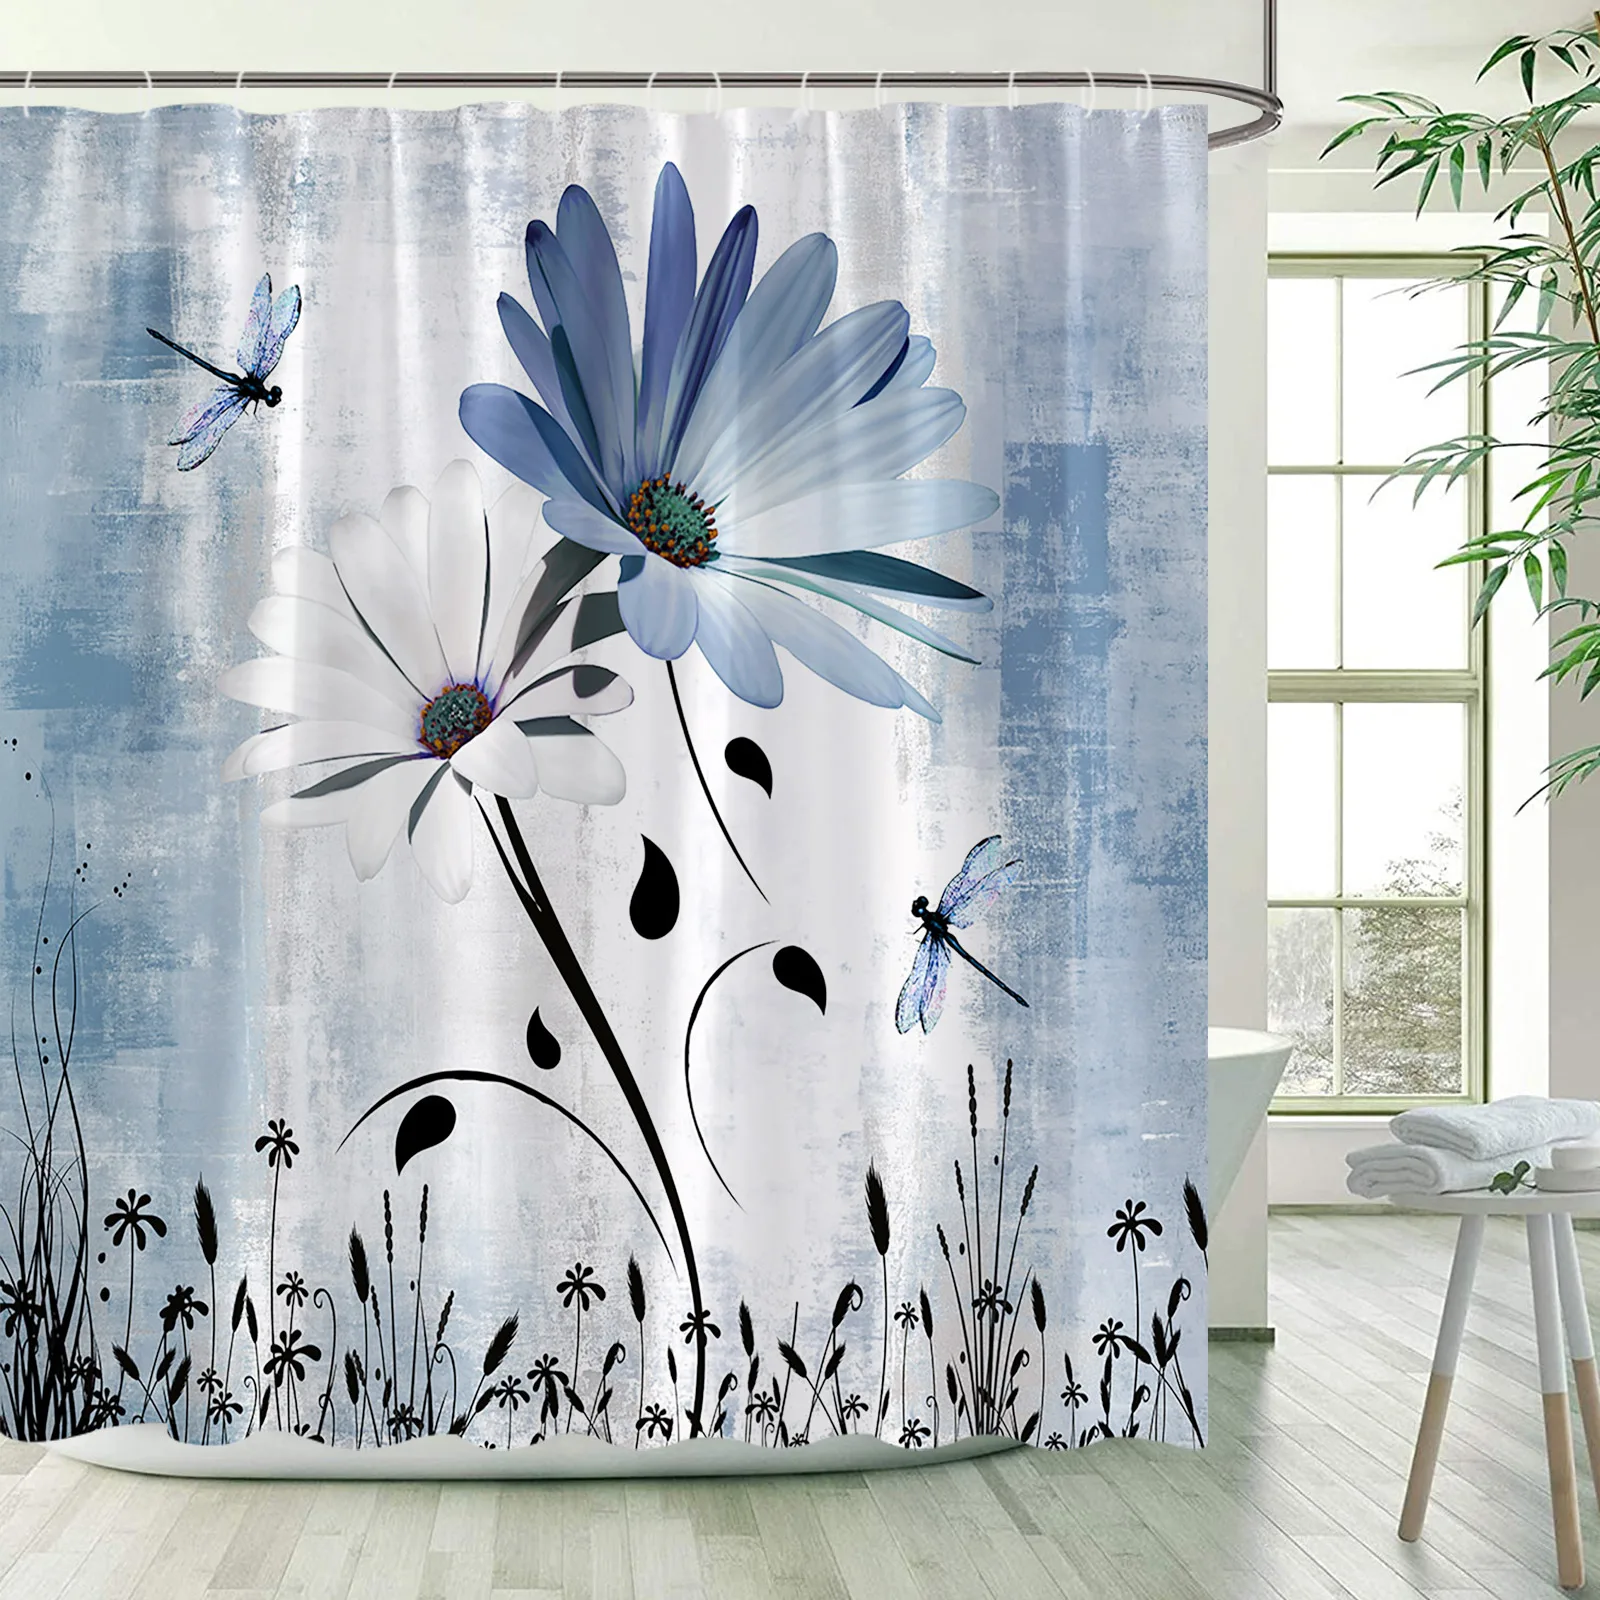 

Занавеска для душа в рустикальном стиле с изображением синих и белых цветов, стрекозы и растений, занавеска для ванной в стиле гранж, тканев...